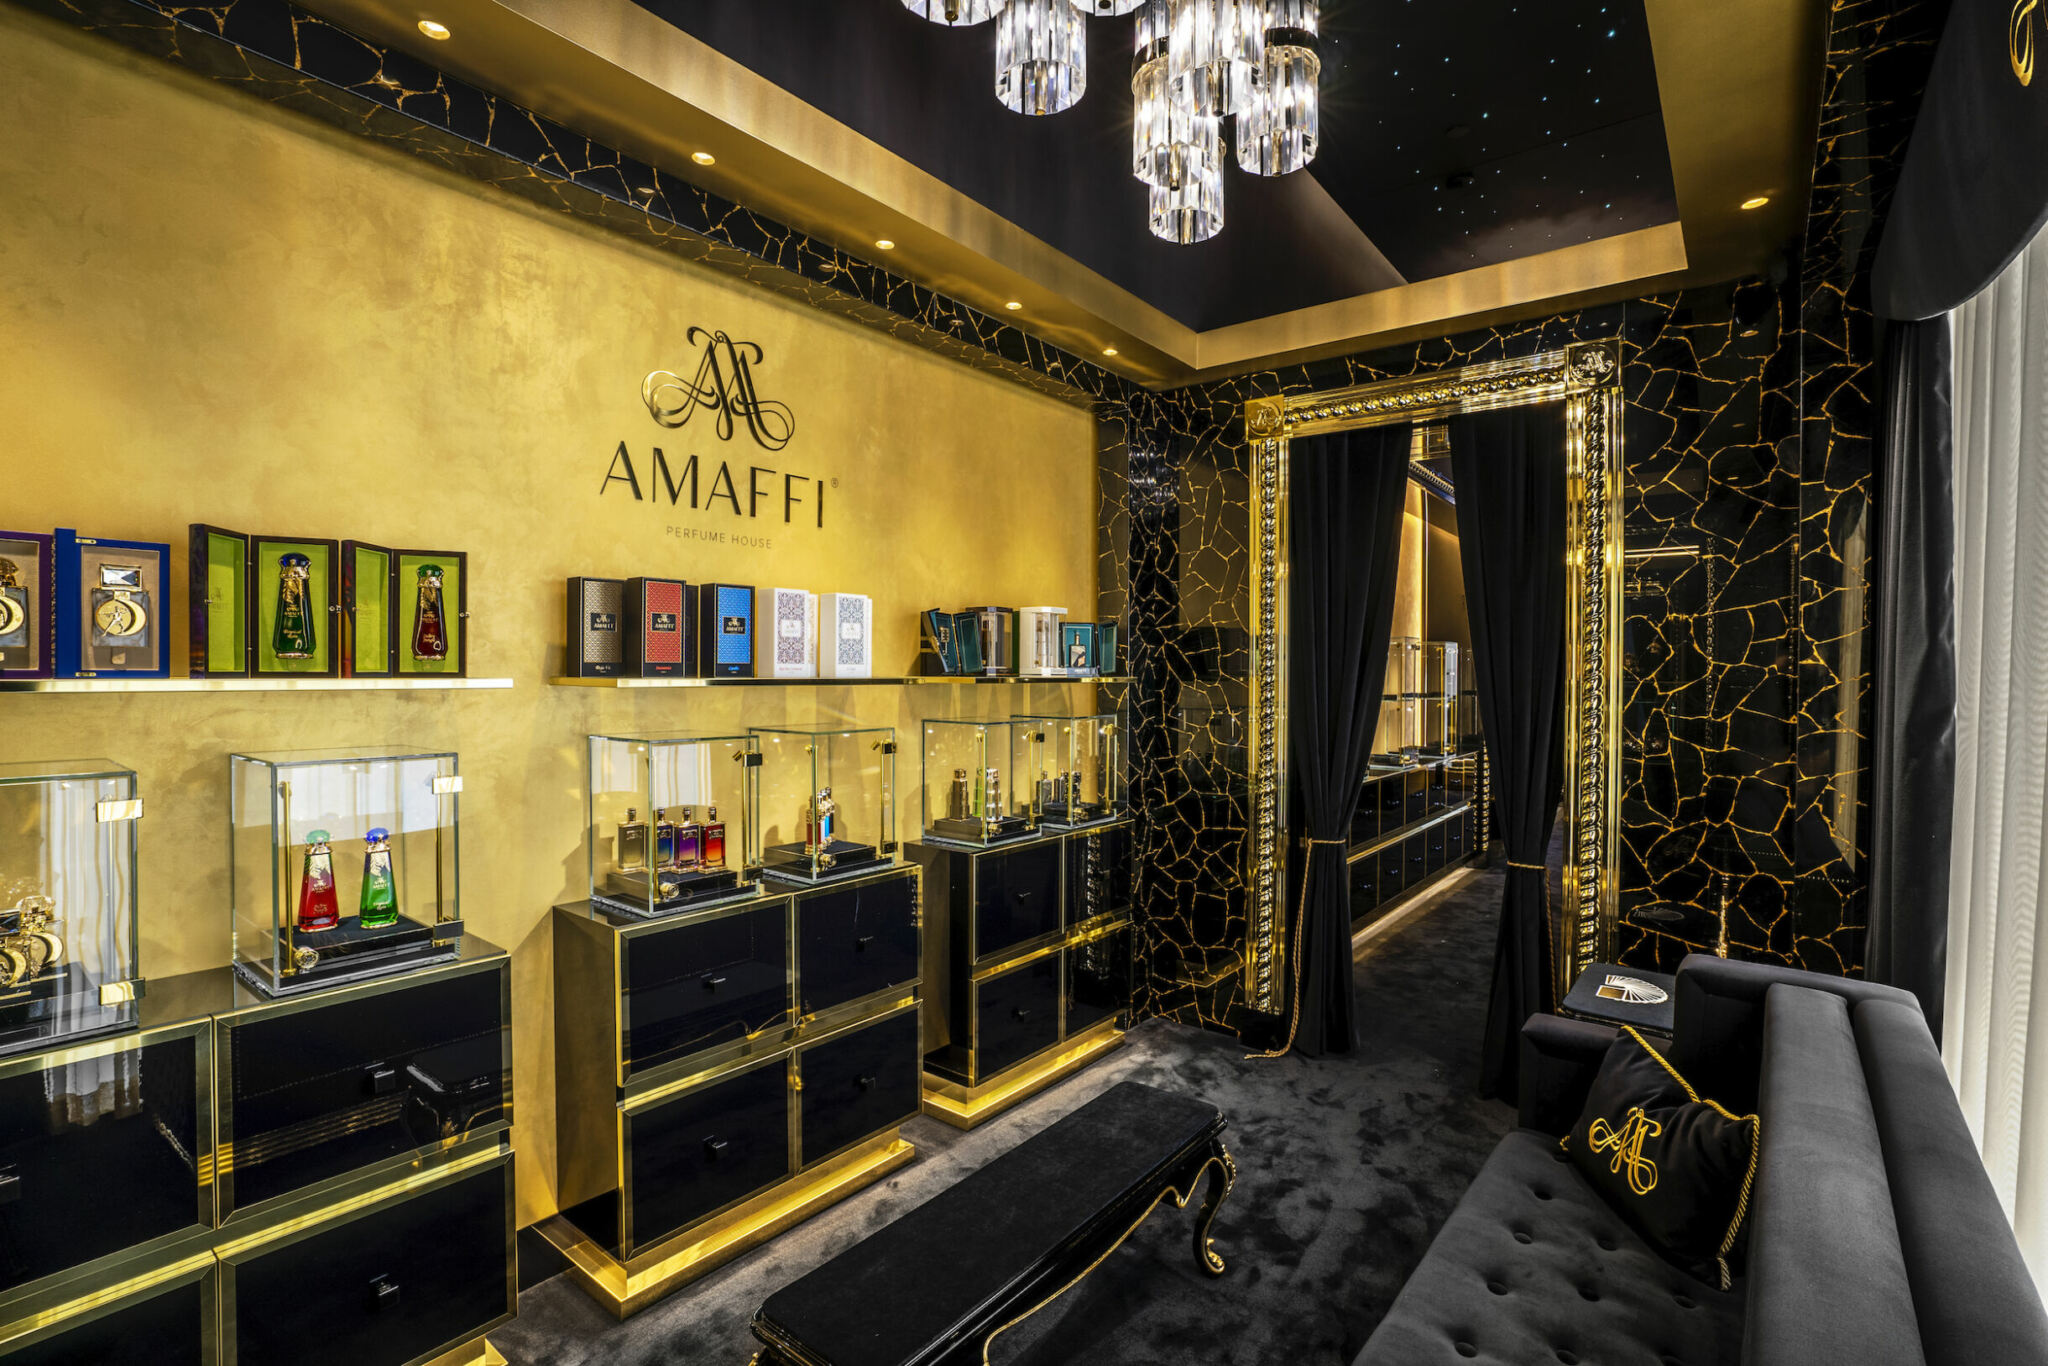 Amaffi Perfume House - Elixirs Extravagantly Bottled!